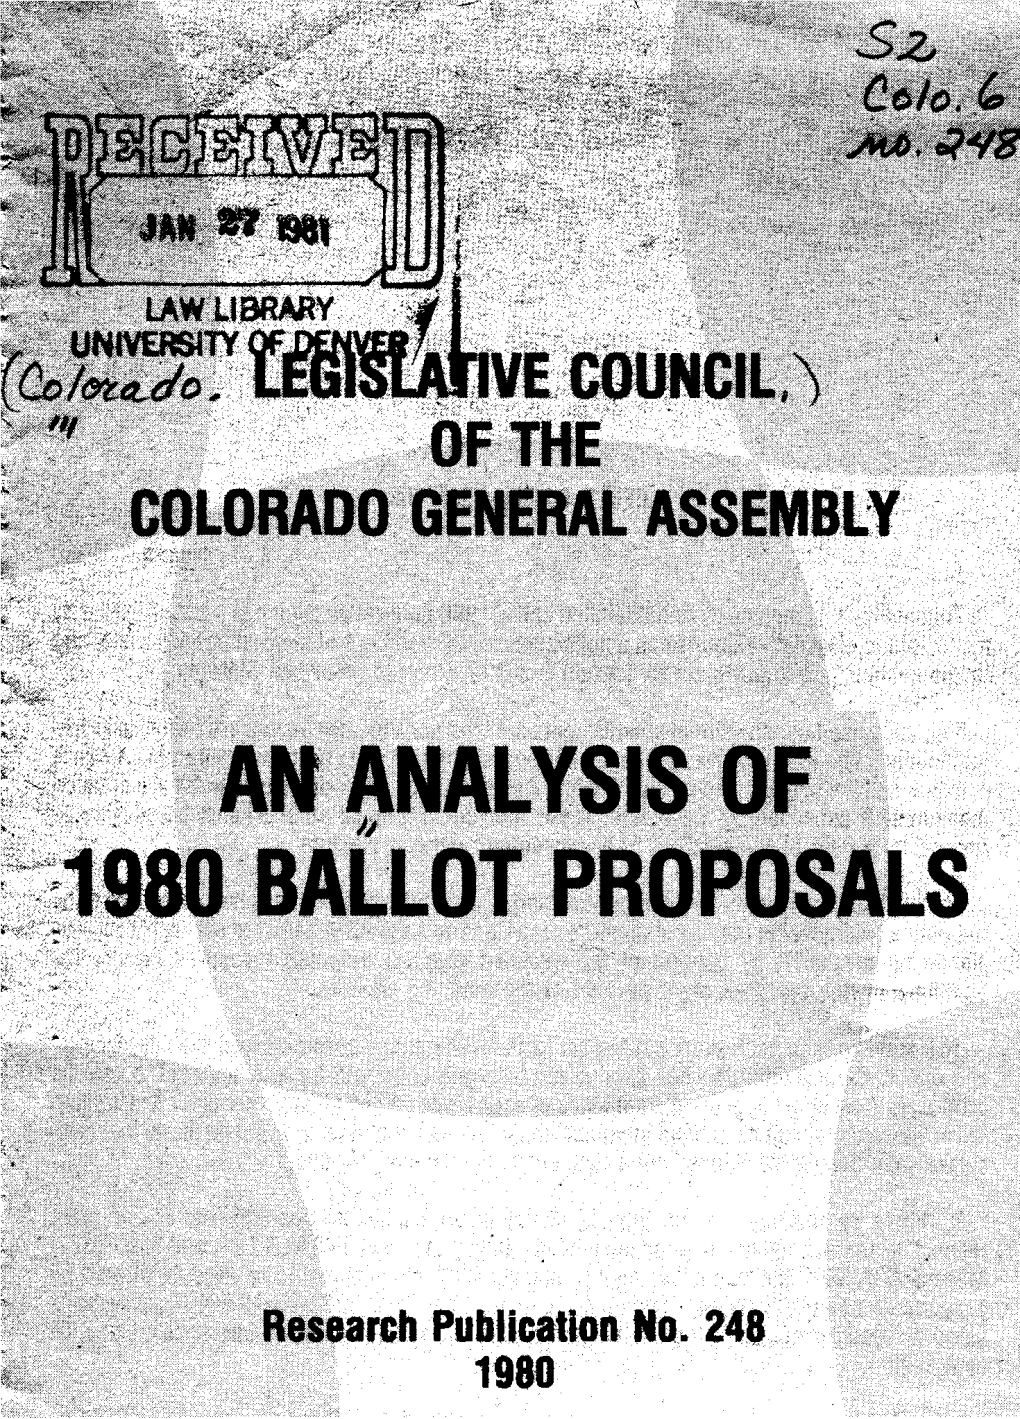 An Analysis of 1980 Ballot Proposals